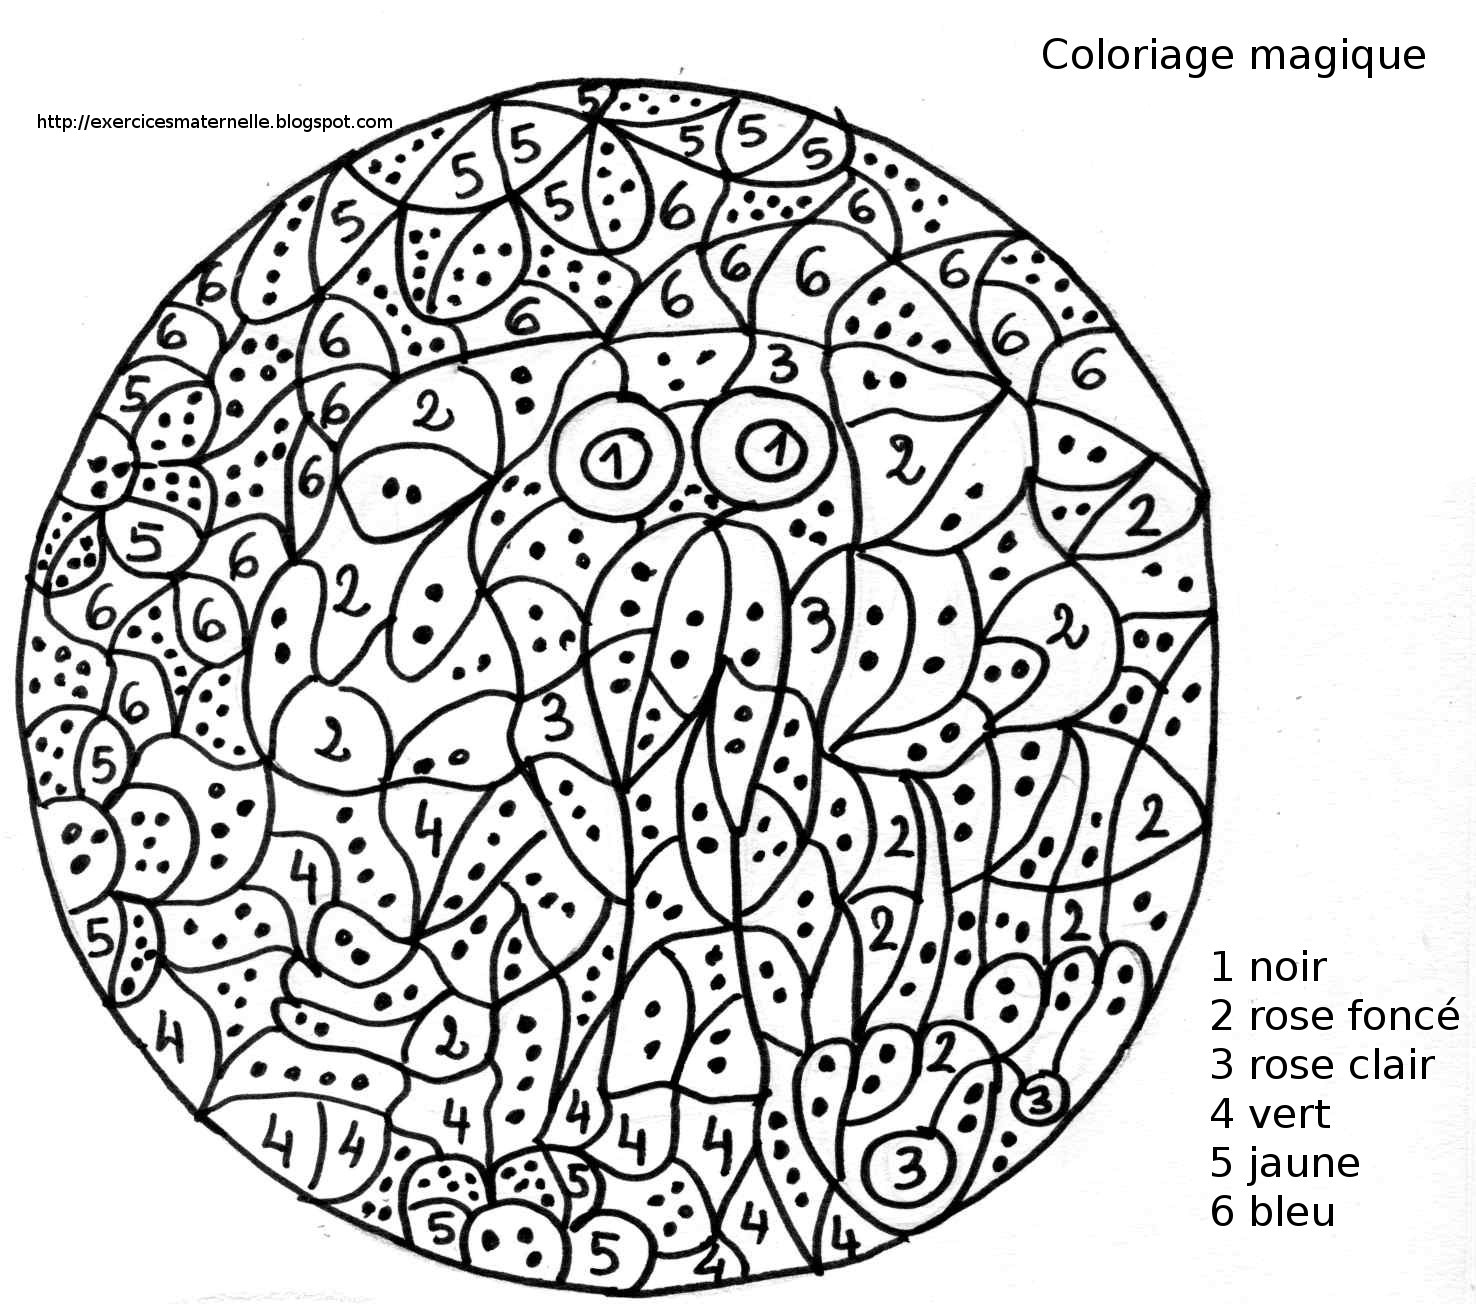 23 Dessins De Coloriage Magique Maternelle À Imprimer concernant Coloriage Magique Maternelle 